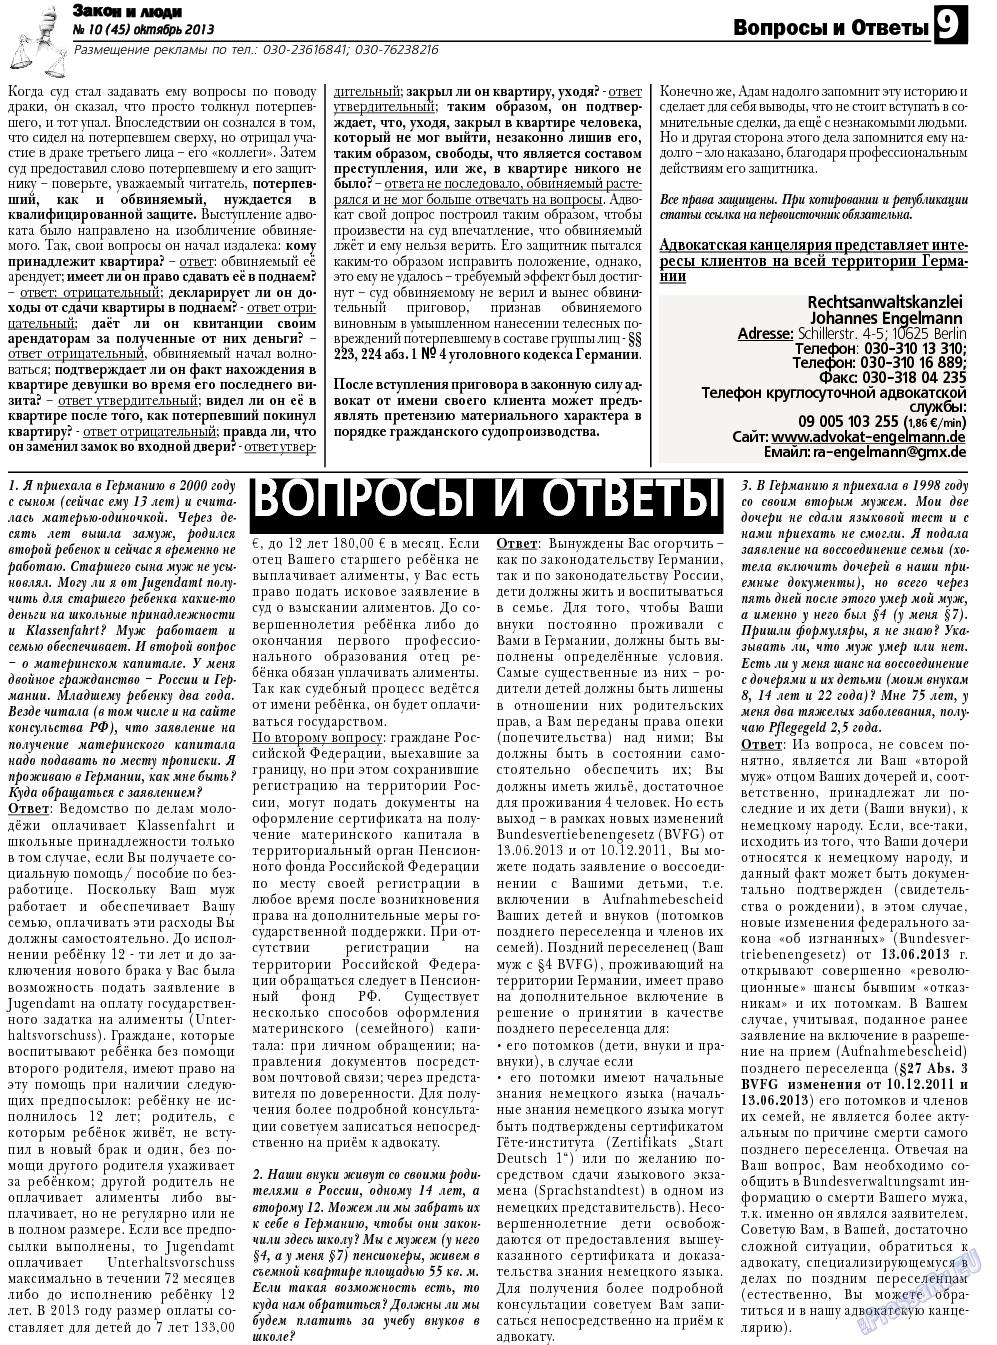 Закон и люди, газета. 2013 №10 стр.9